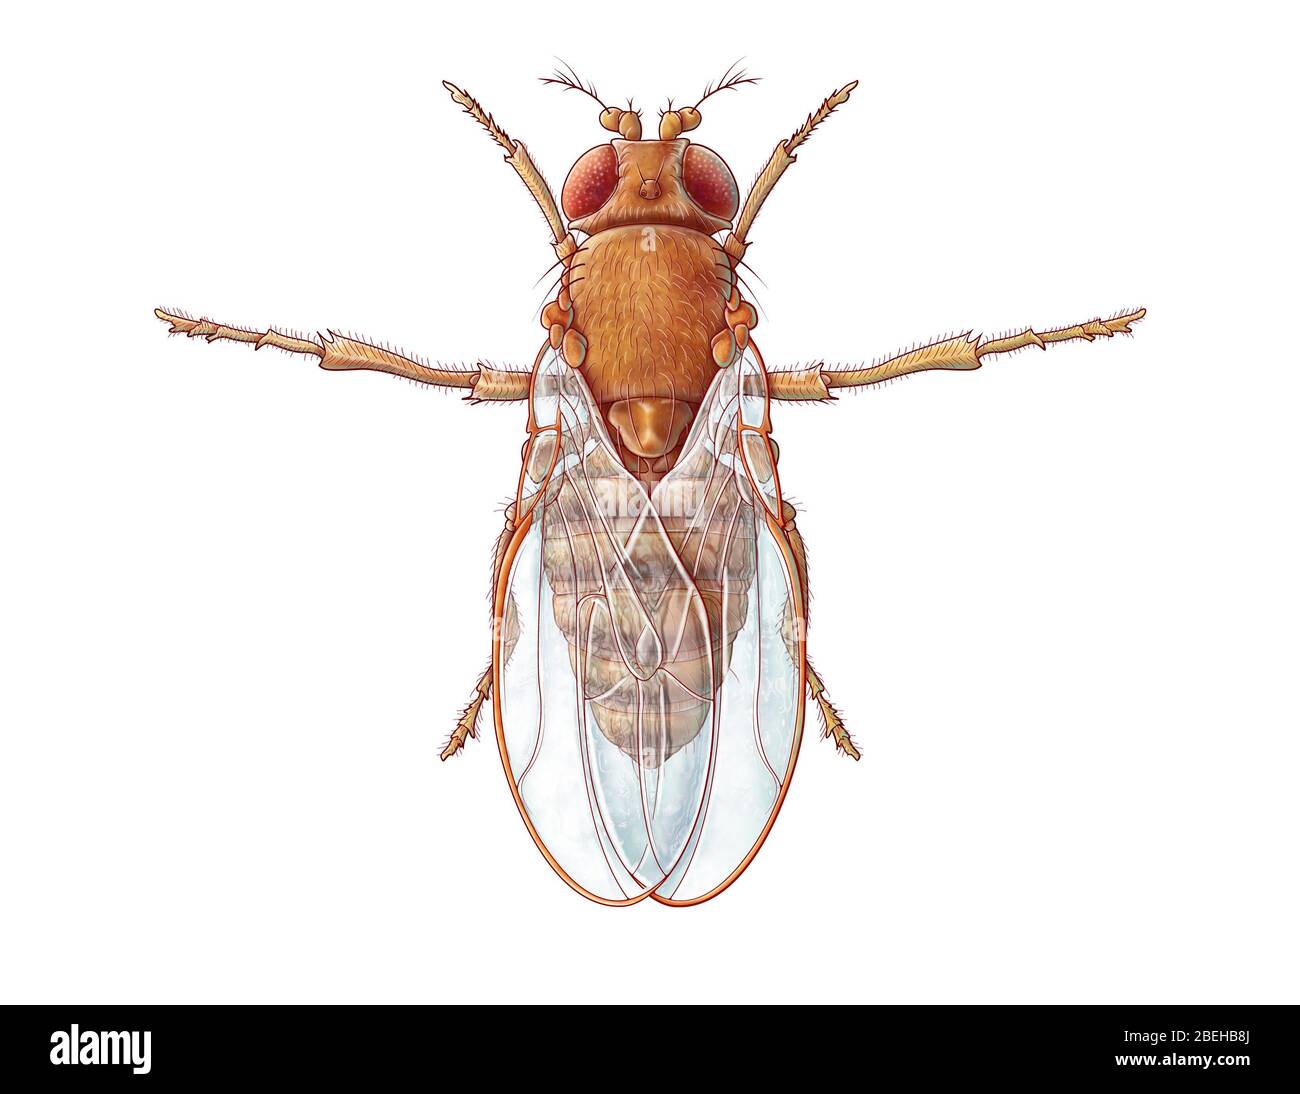 Une illustration de la mouche des fruits commune, également connue sous le nom de Drosophila melanogaster. Bien que les mouches des fruits soient des parasites domestiques courants, elles sont également utilisées par les chercheurs pour étudier la génétique, la physiologie, la pathologie et l'évolution. Banque D'Images